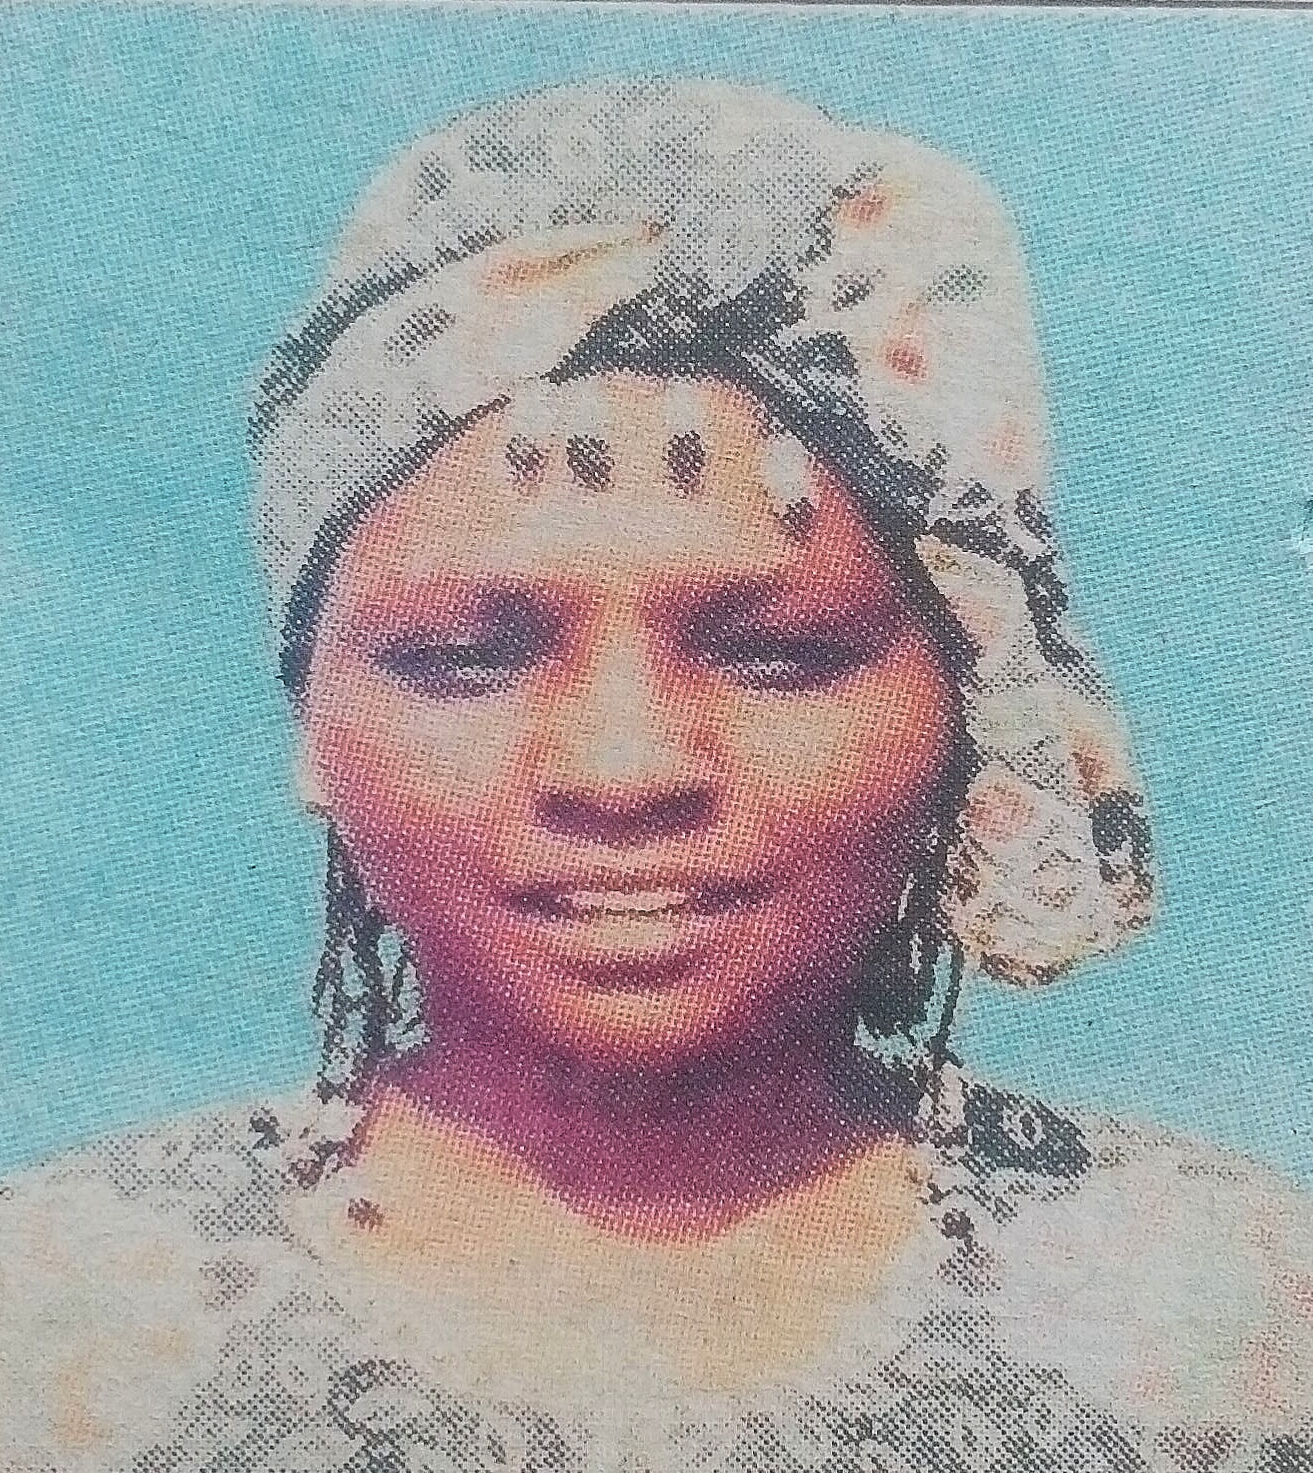 Obituary Image of Florence Wanjiku Thuku